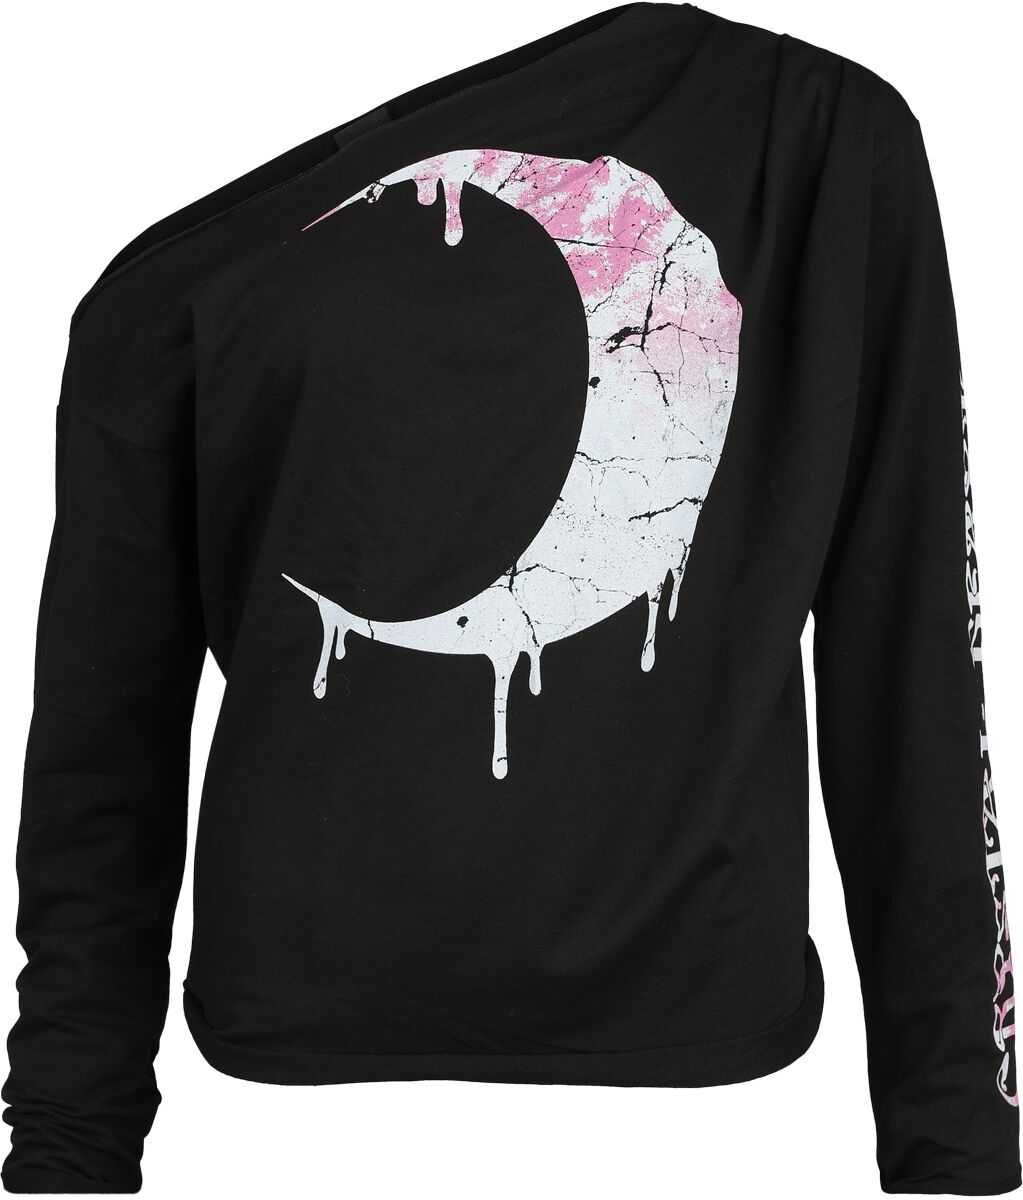 Outer Vision - Gothic Sweatshirt - Artemis - S bis XXL - für Damen - Größe M - schwarz